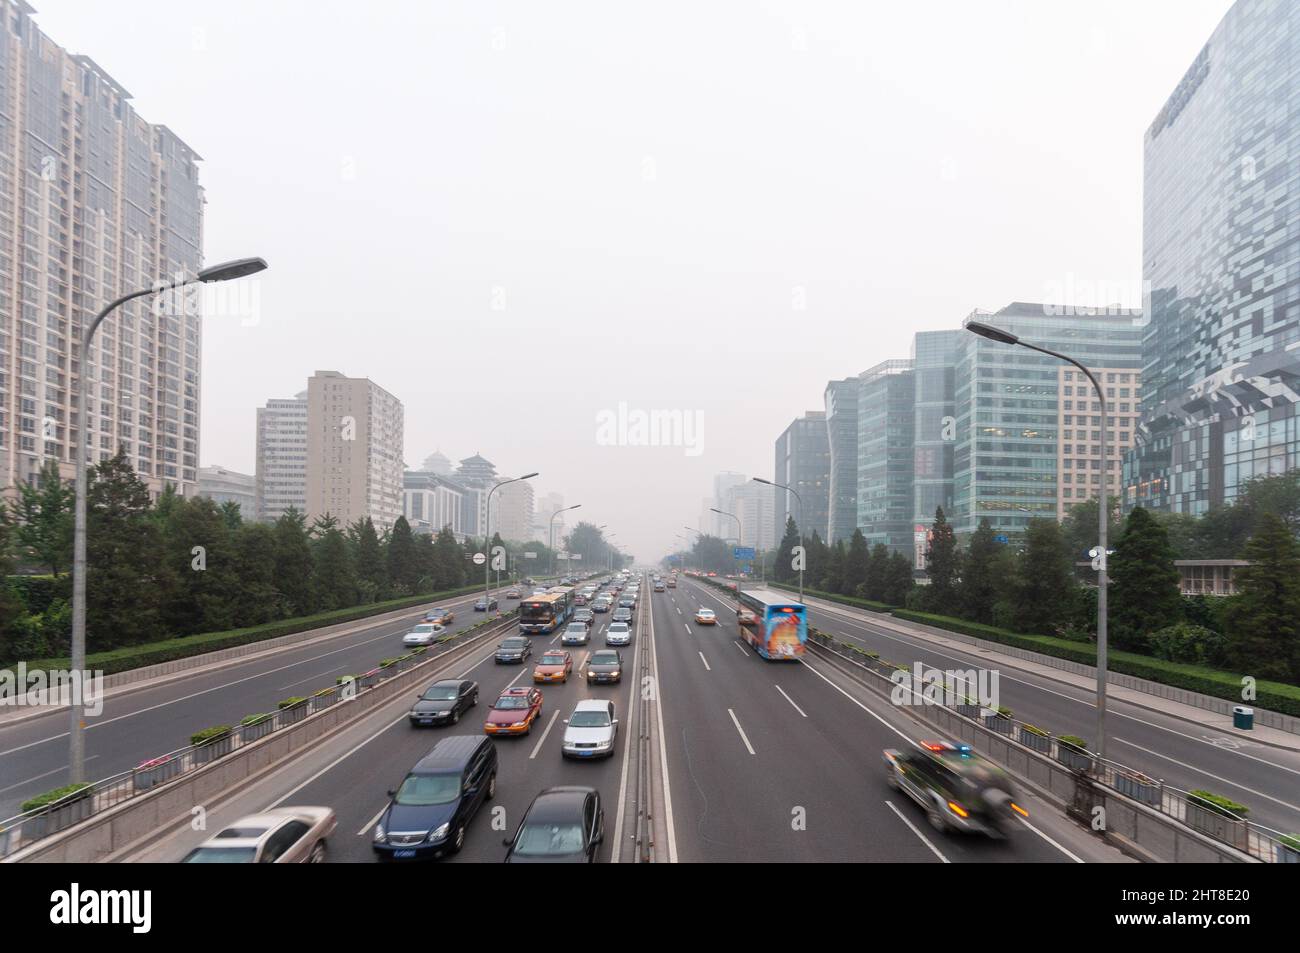 Pechino, Cina - 9 agosto 2010: L'inquinamento atmosferico avvolge gli edifici di uffici moden che si affacciano sulla seconda circonvallazione di Pechino. Foto Stock